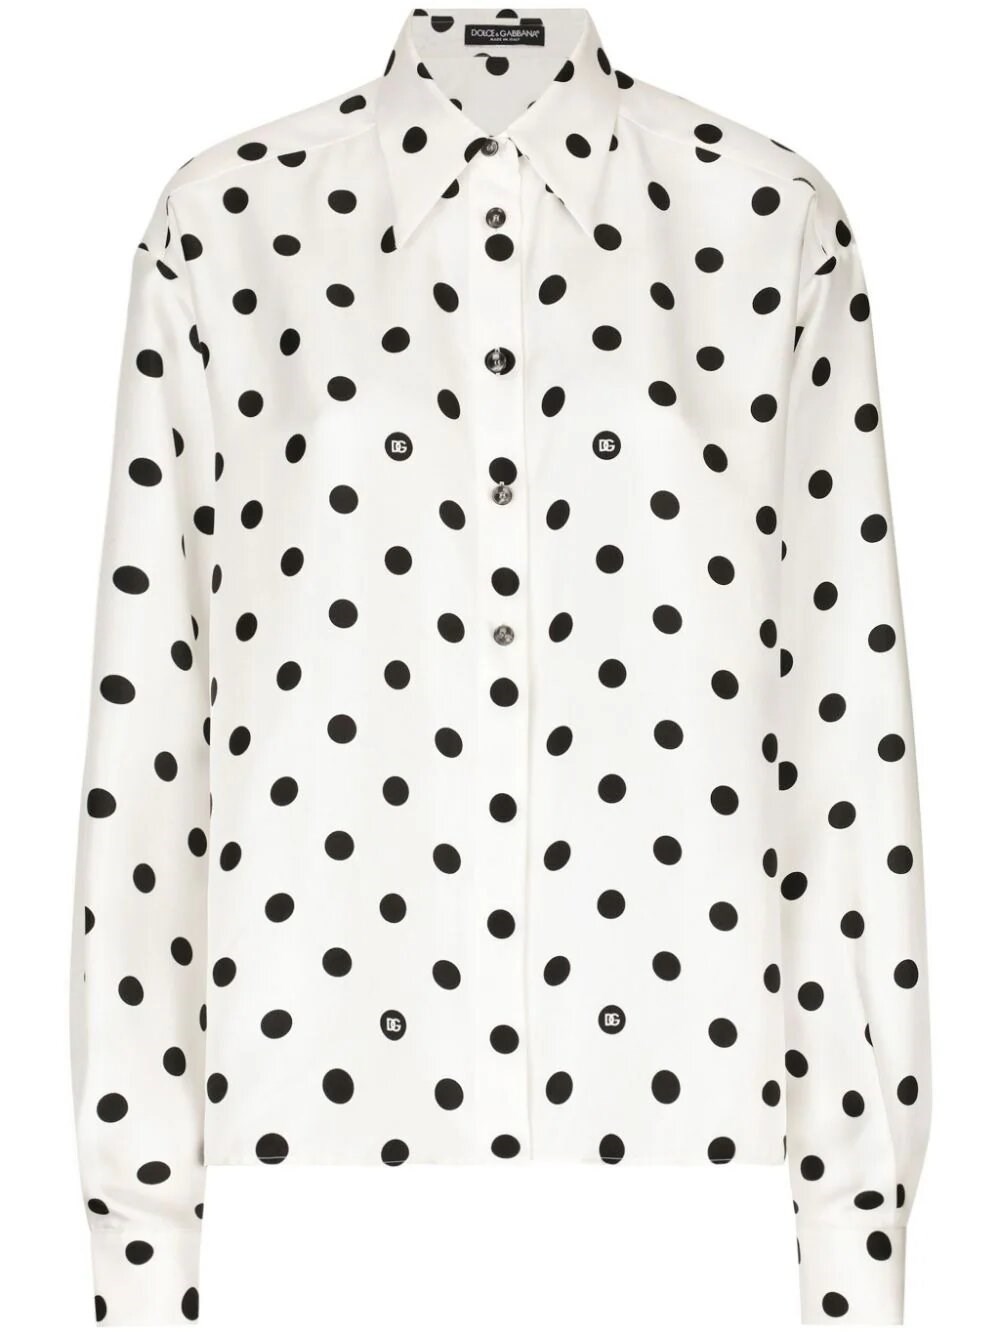 Dolce & Gabbana Polka-dot Silk Shirt In White/black